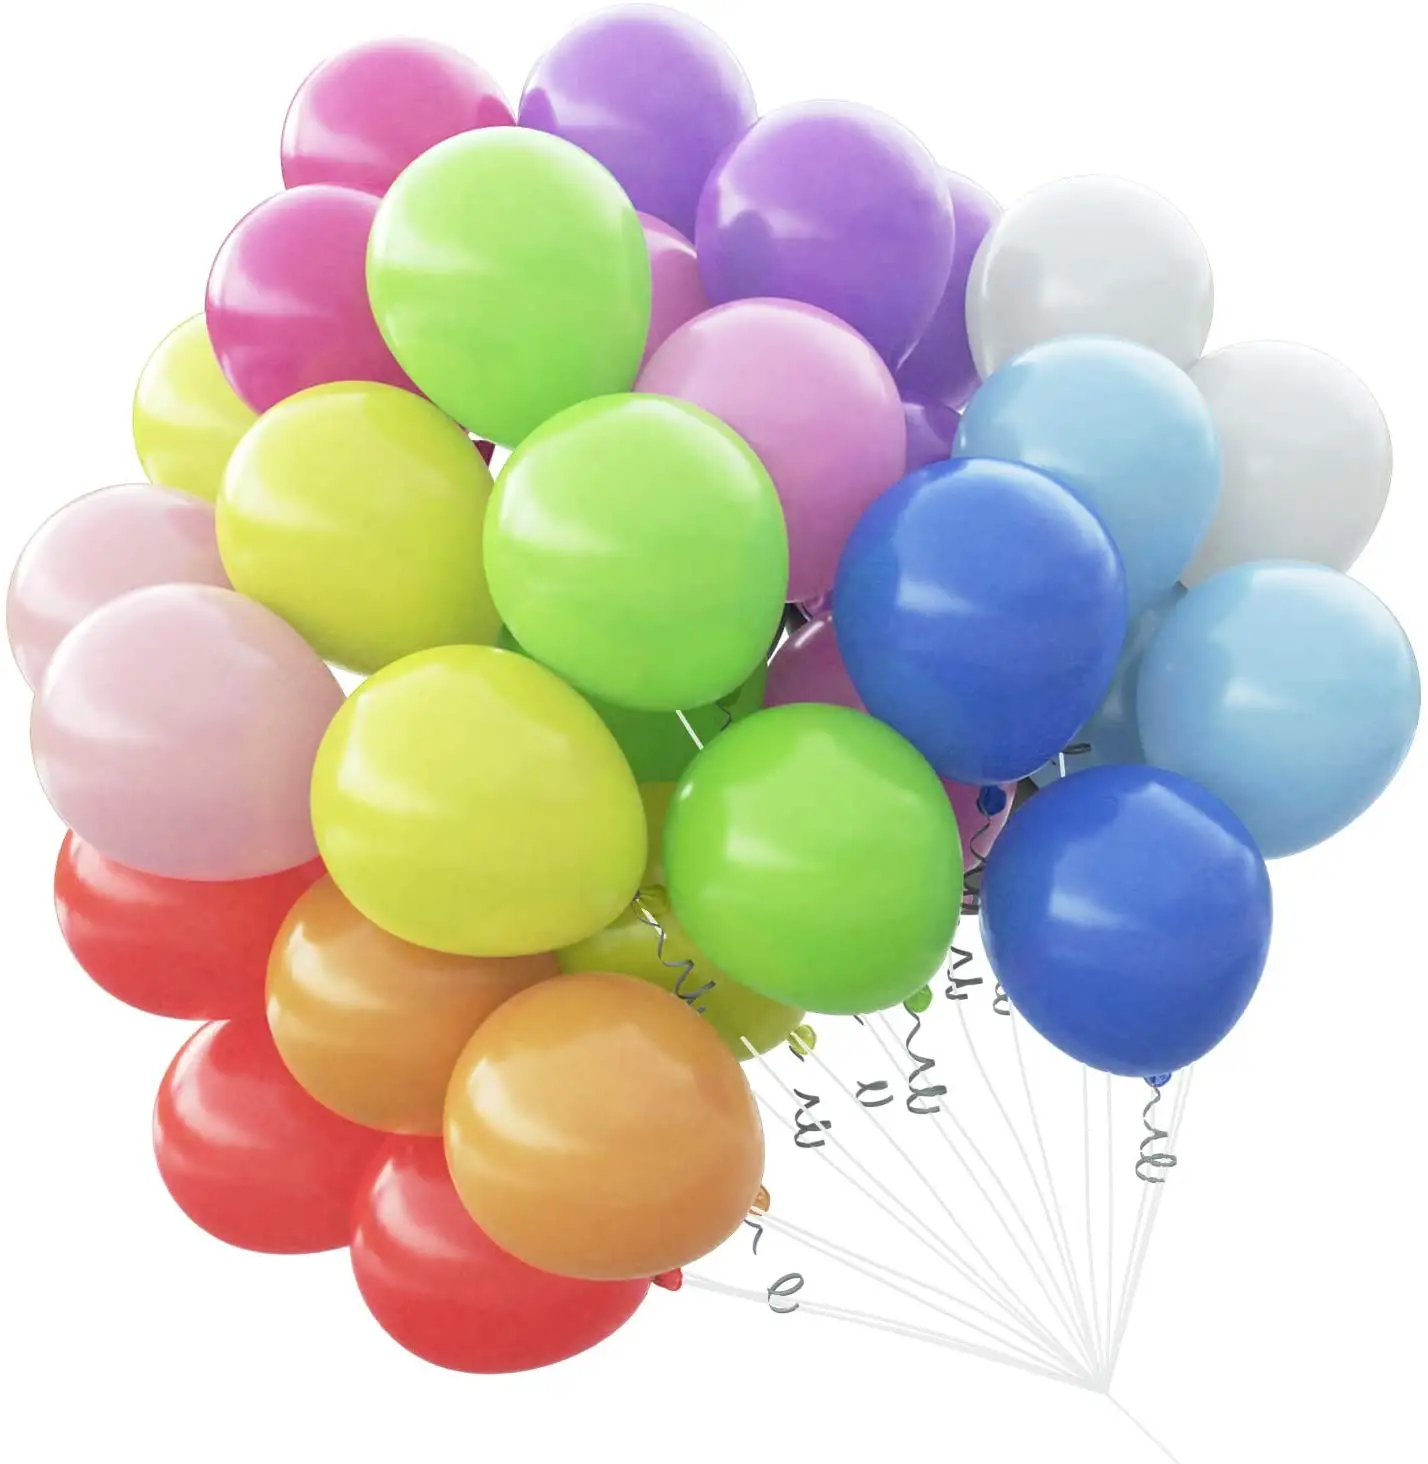 Großhandel Hohe Qualität 5inch Latex Ballons für Party Hochzeit Weihnachten Dekoration